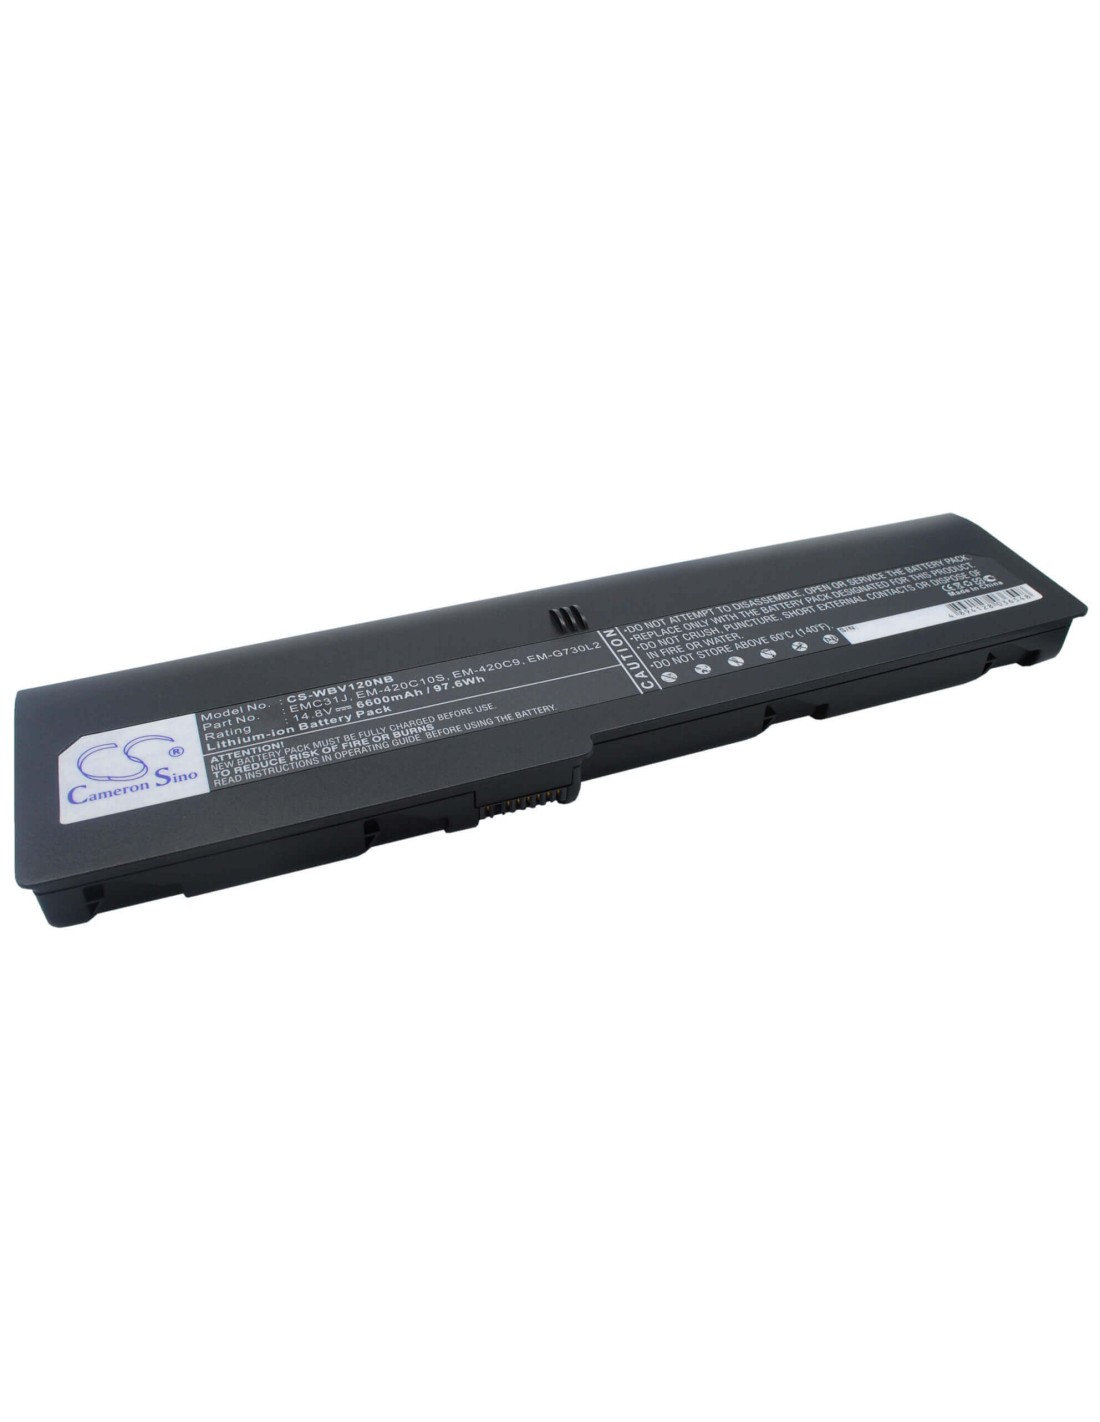 Black Battery for Alphatop G713, G730, G731 14.8V, 6600mAh - 97.68Wh